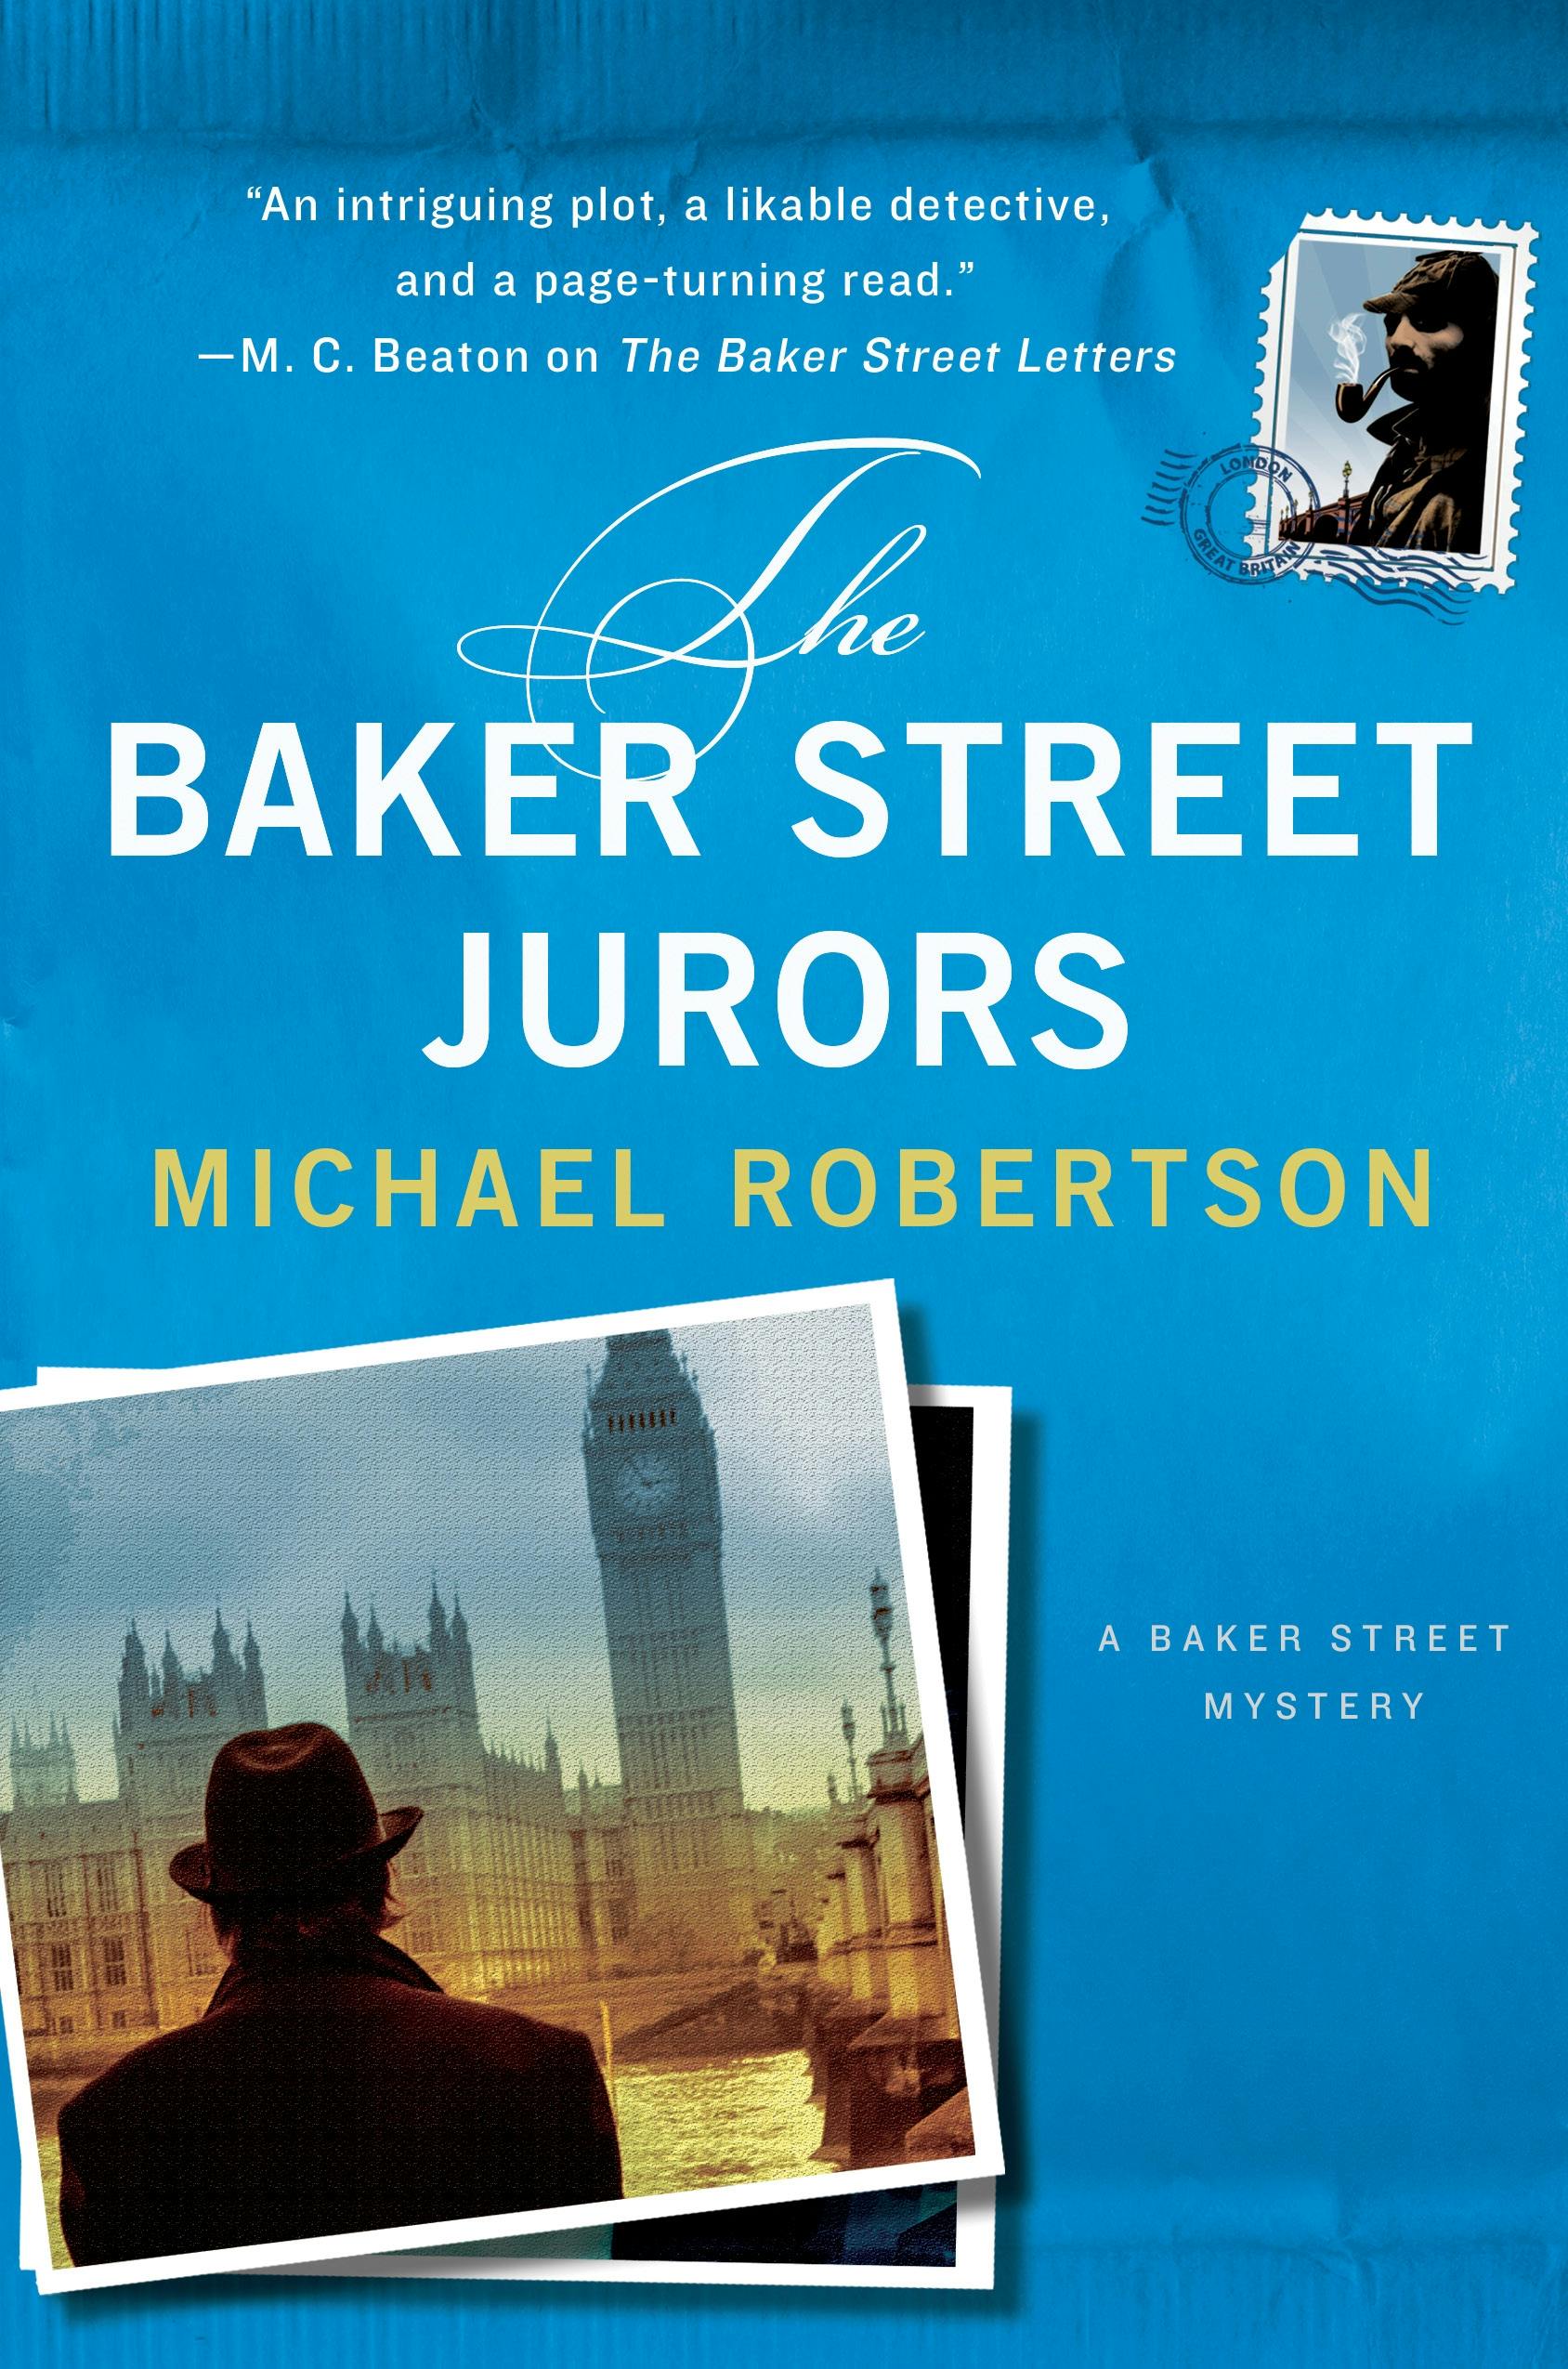 The Baker Street Jurors